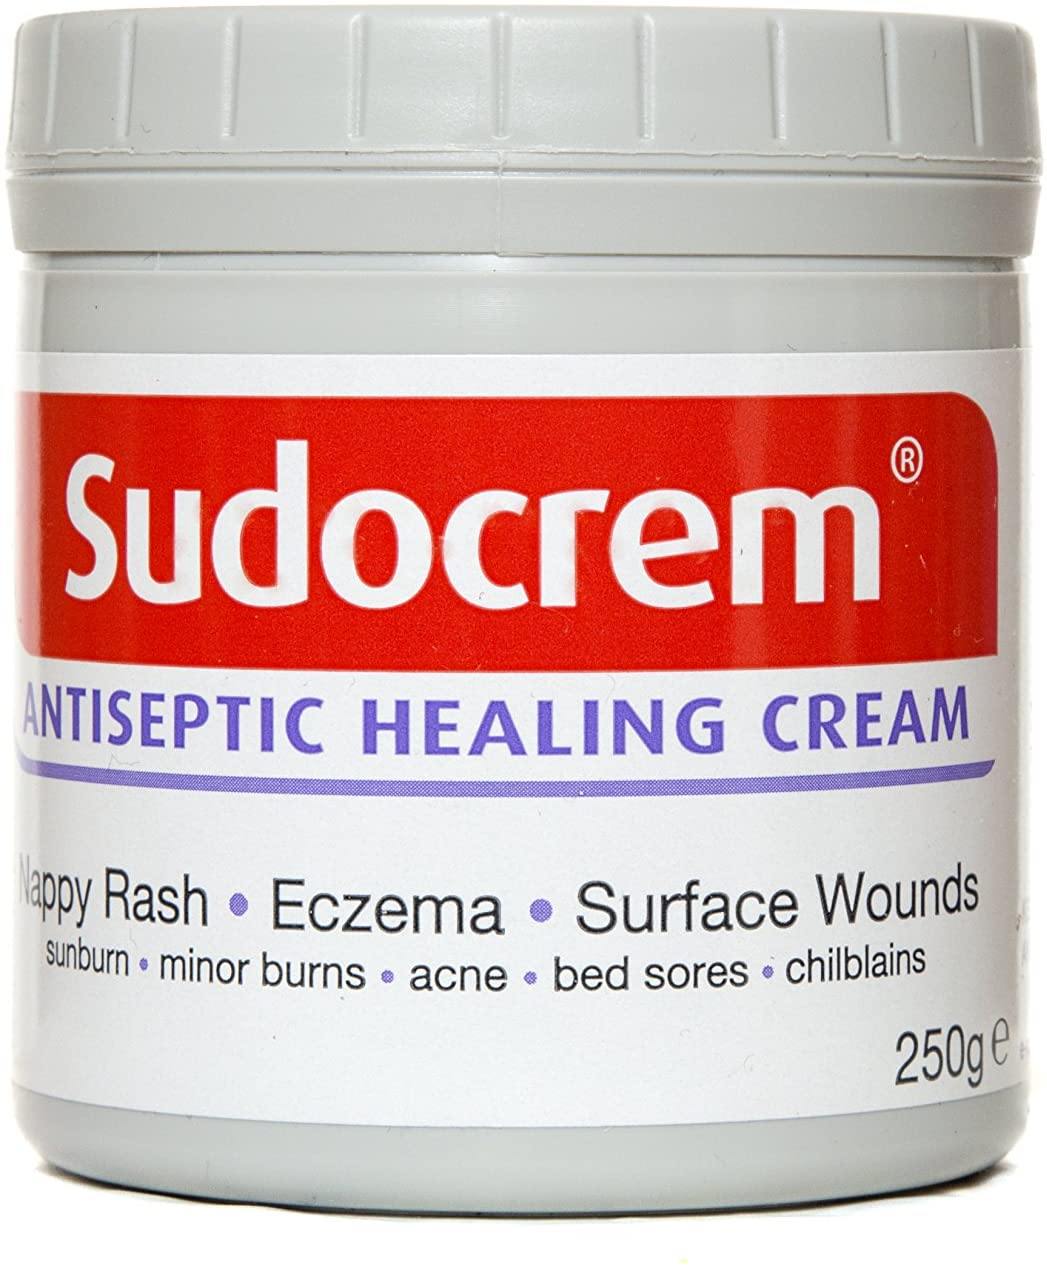 Sudocrem Antiseptic Healing Cream - 250g - sassydeals.co.uk